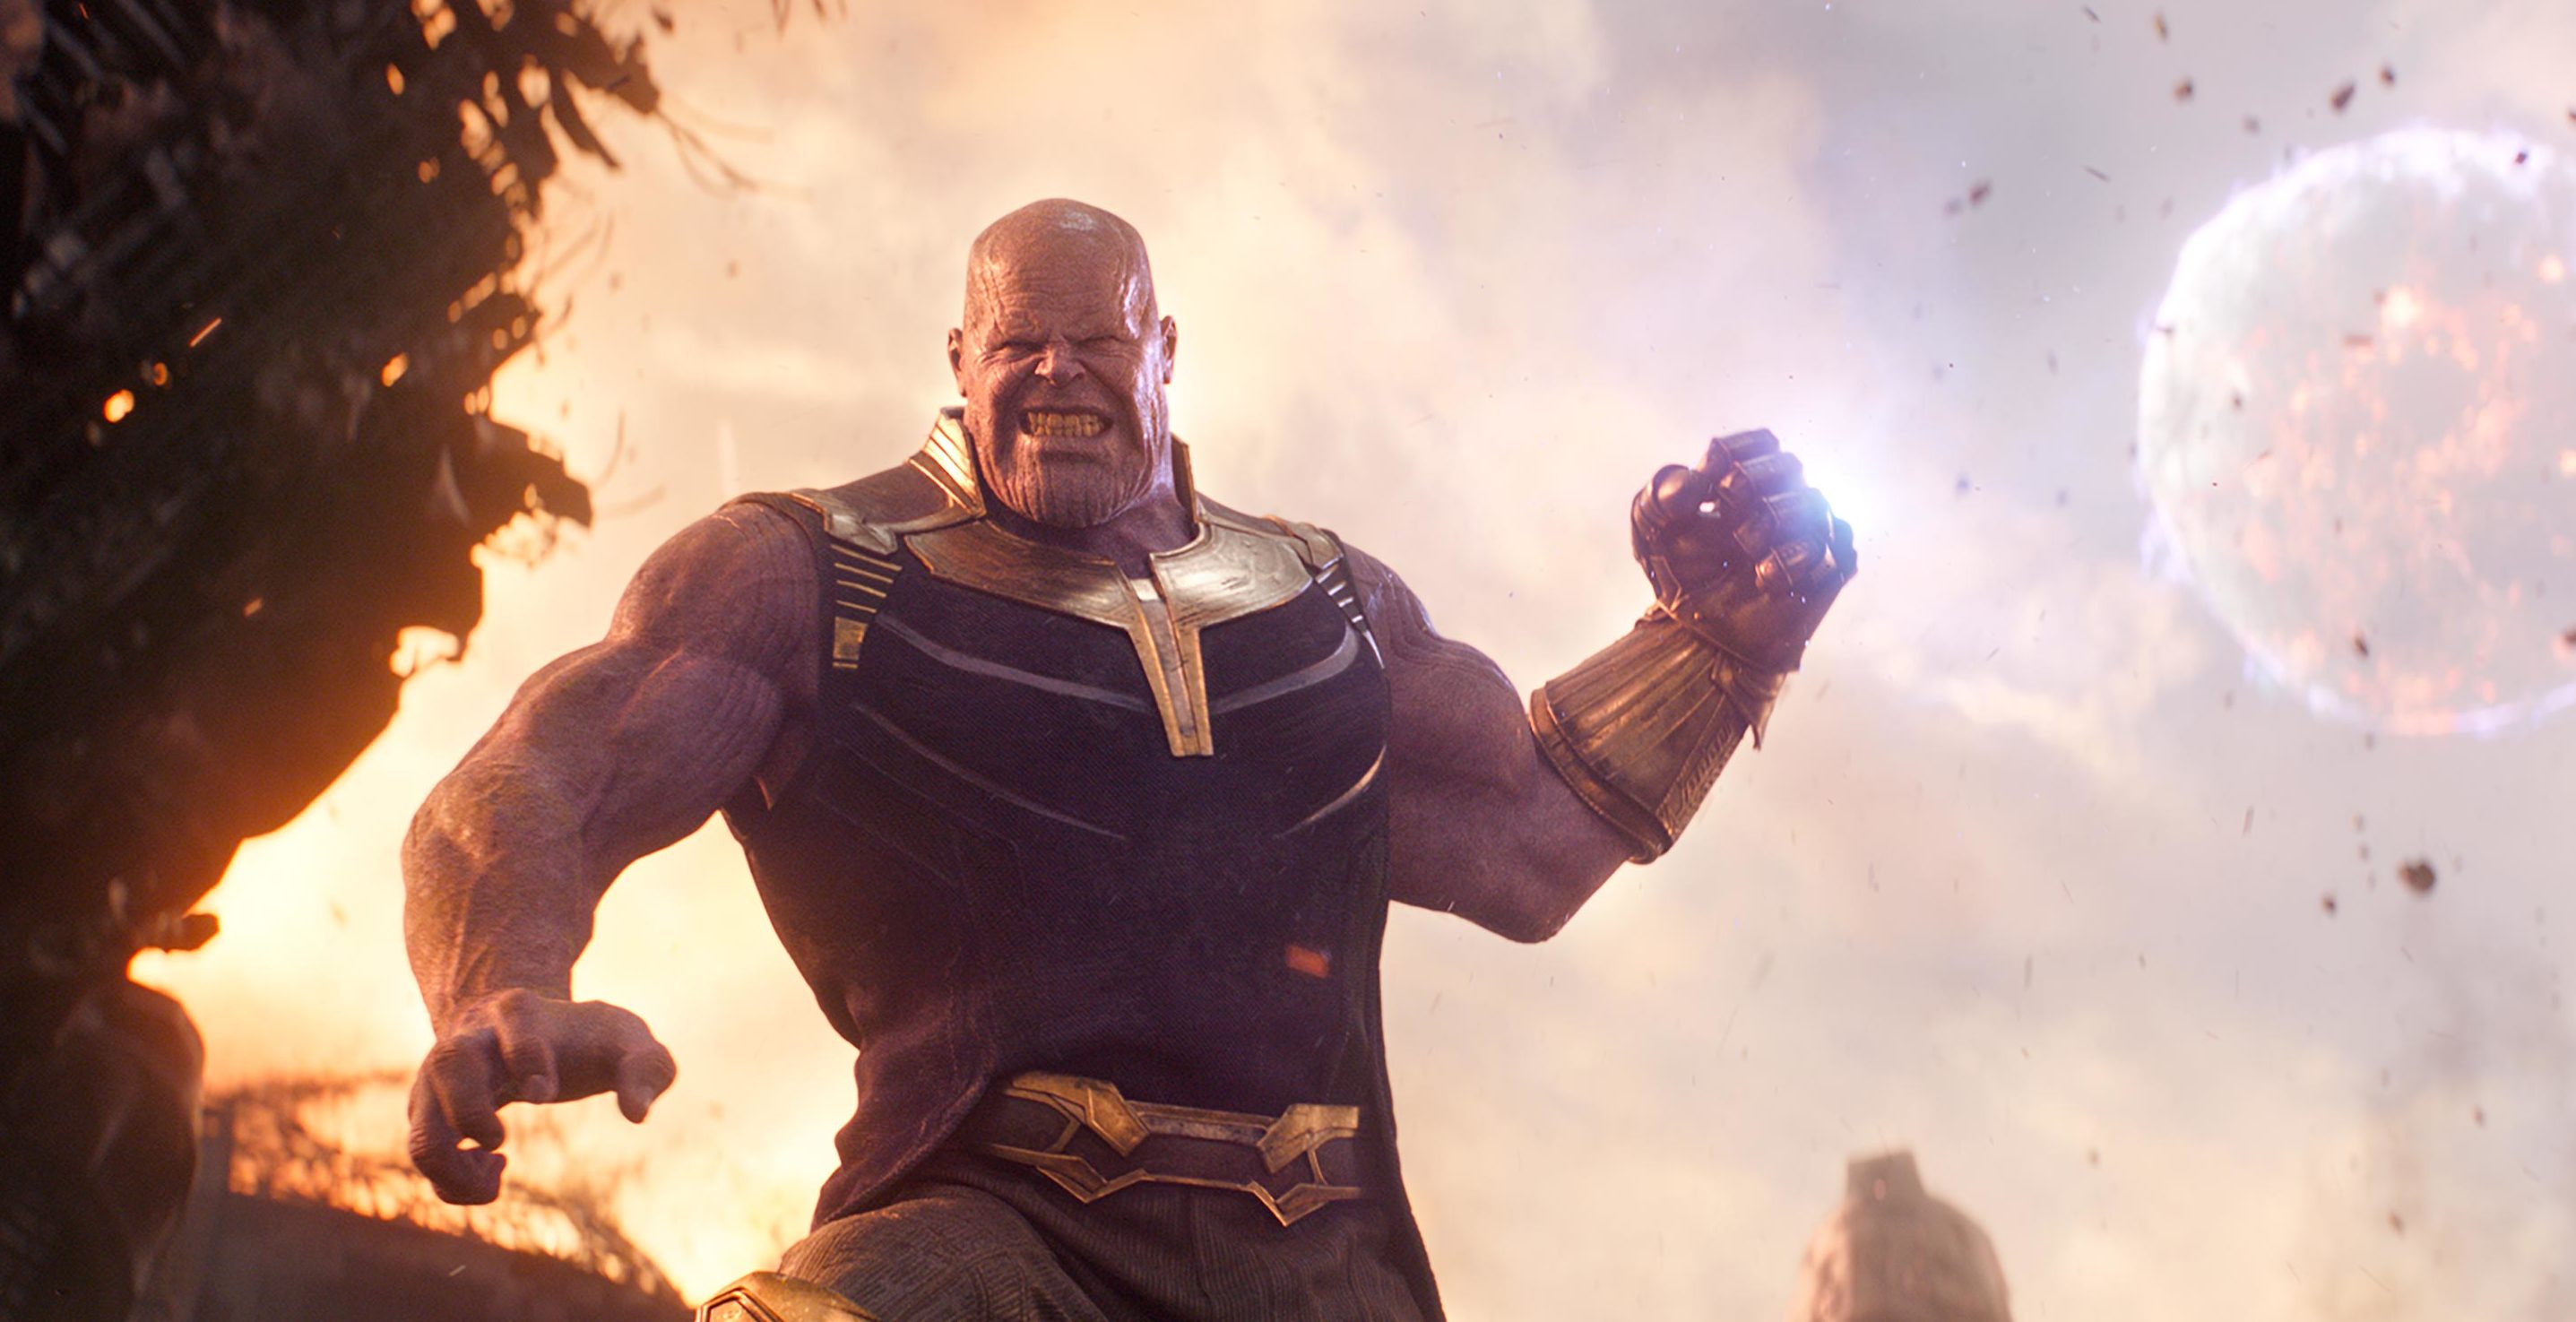 Vingadores 4 | Como Thanos pode ser derrotado no filme? Listamos 10 possibilidades